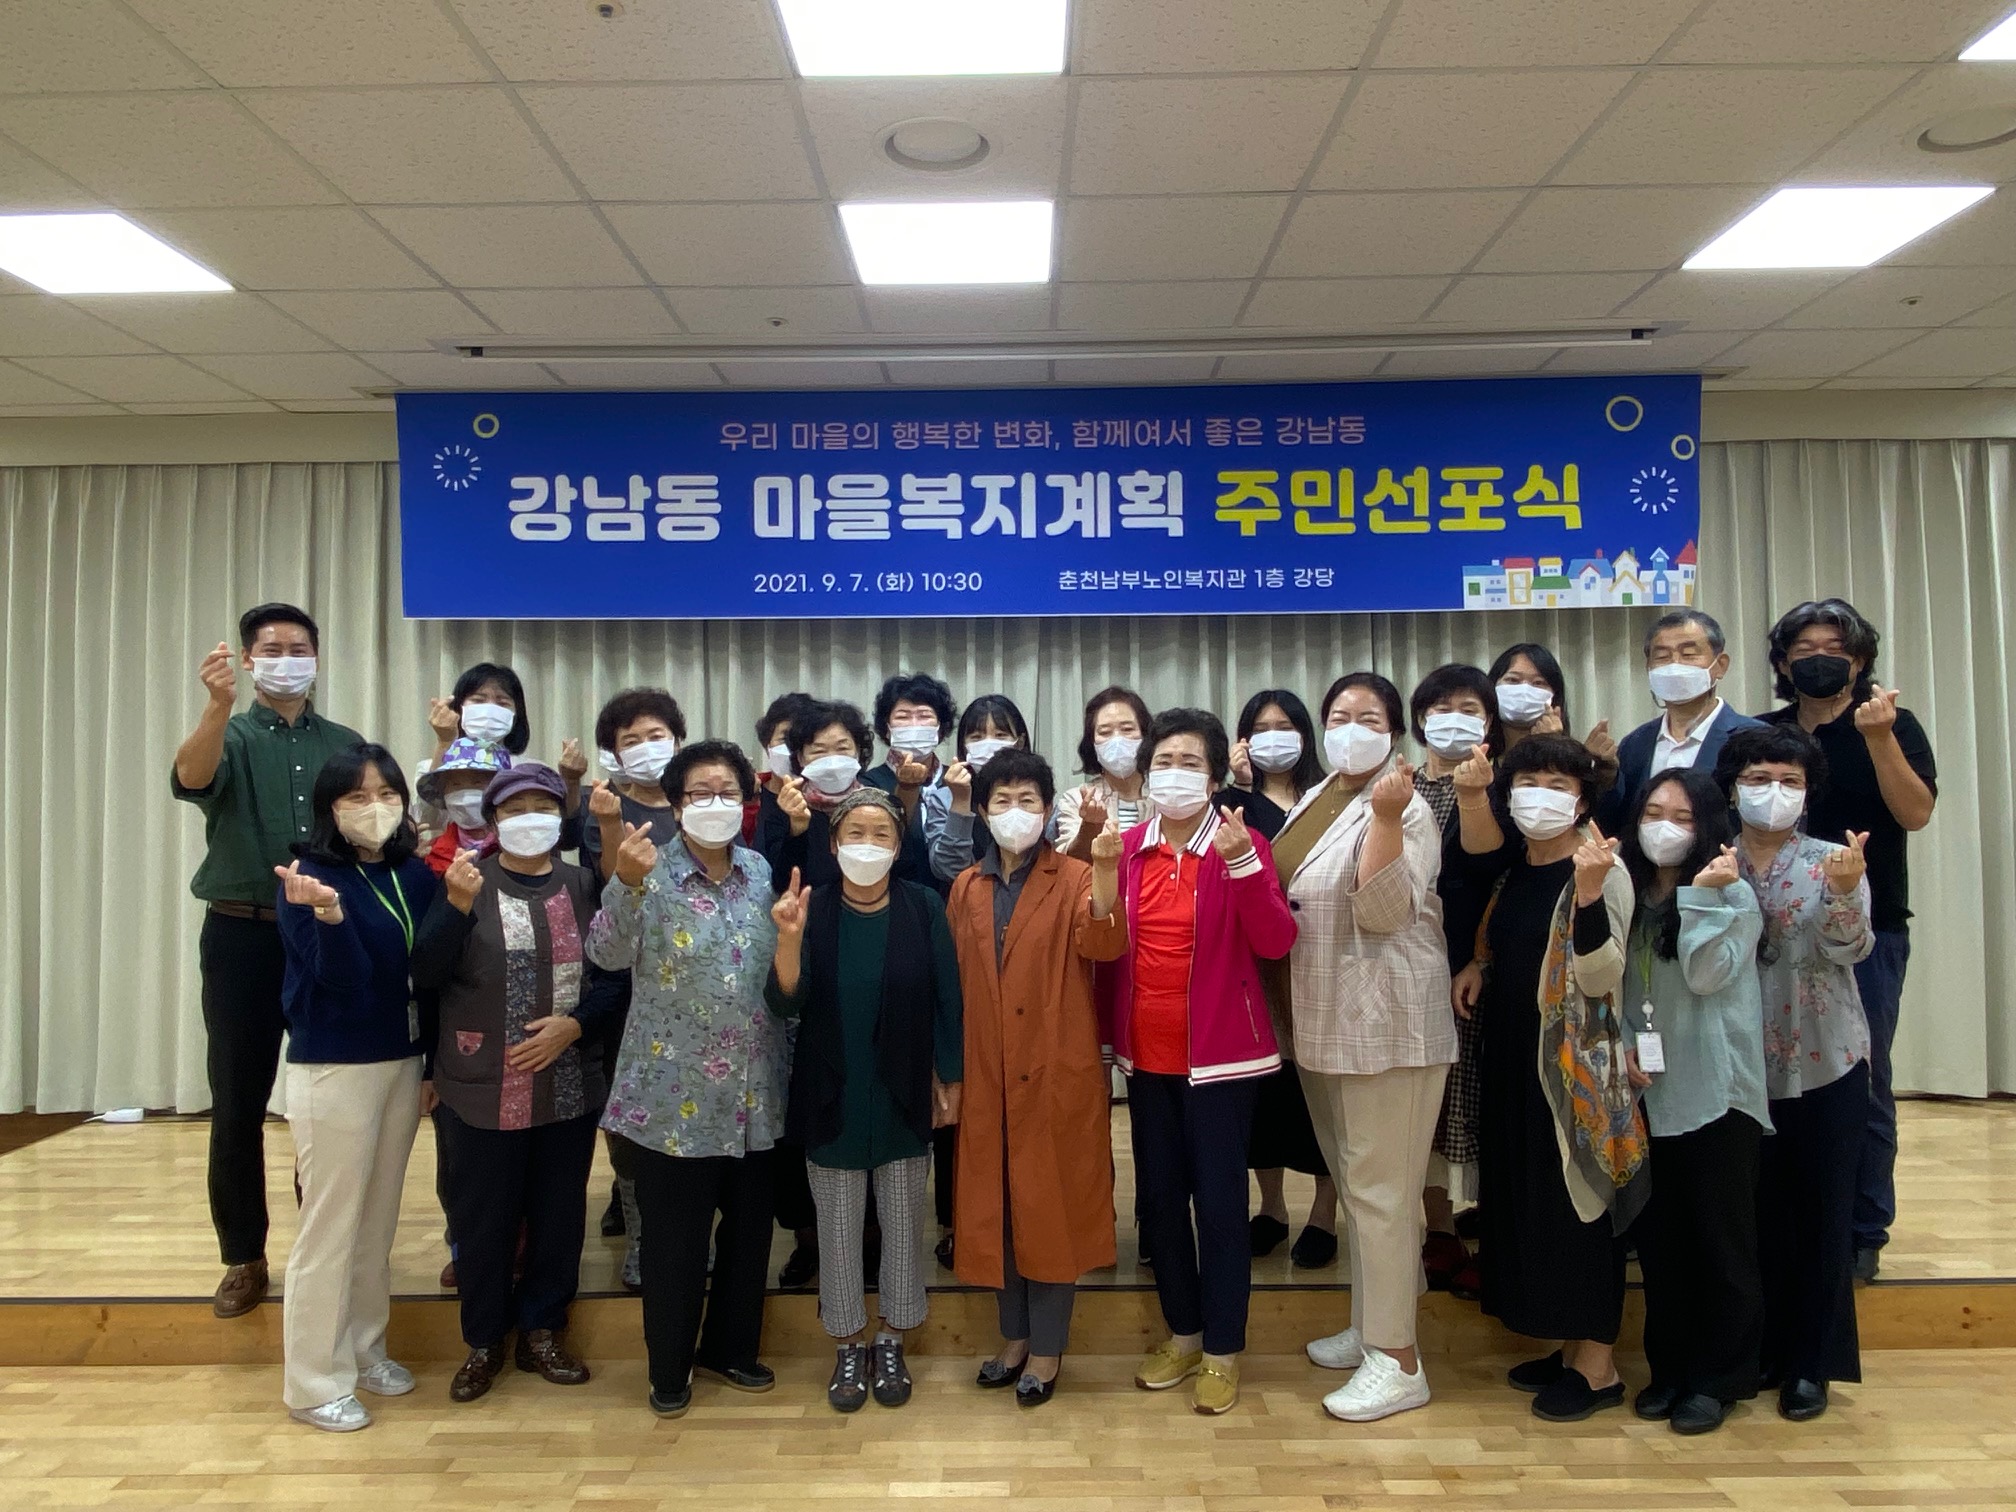 210907 강남동 마을복지계획 주민선포식 개최